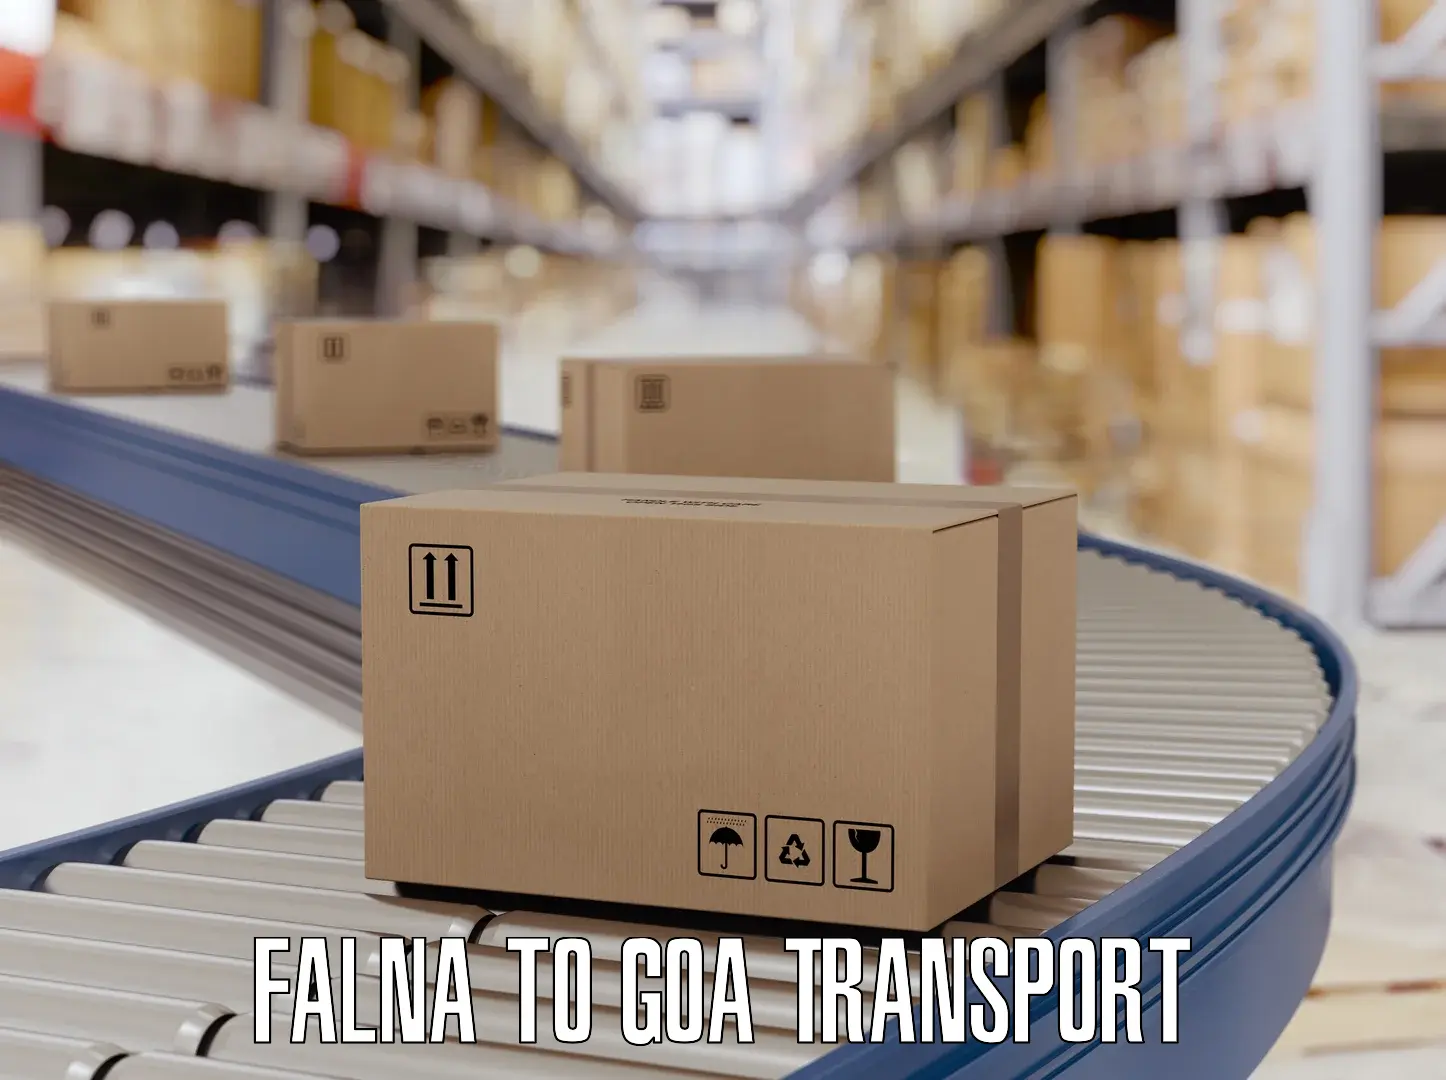 Pick up transport service Falna to South Goa